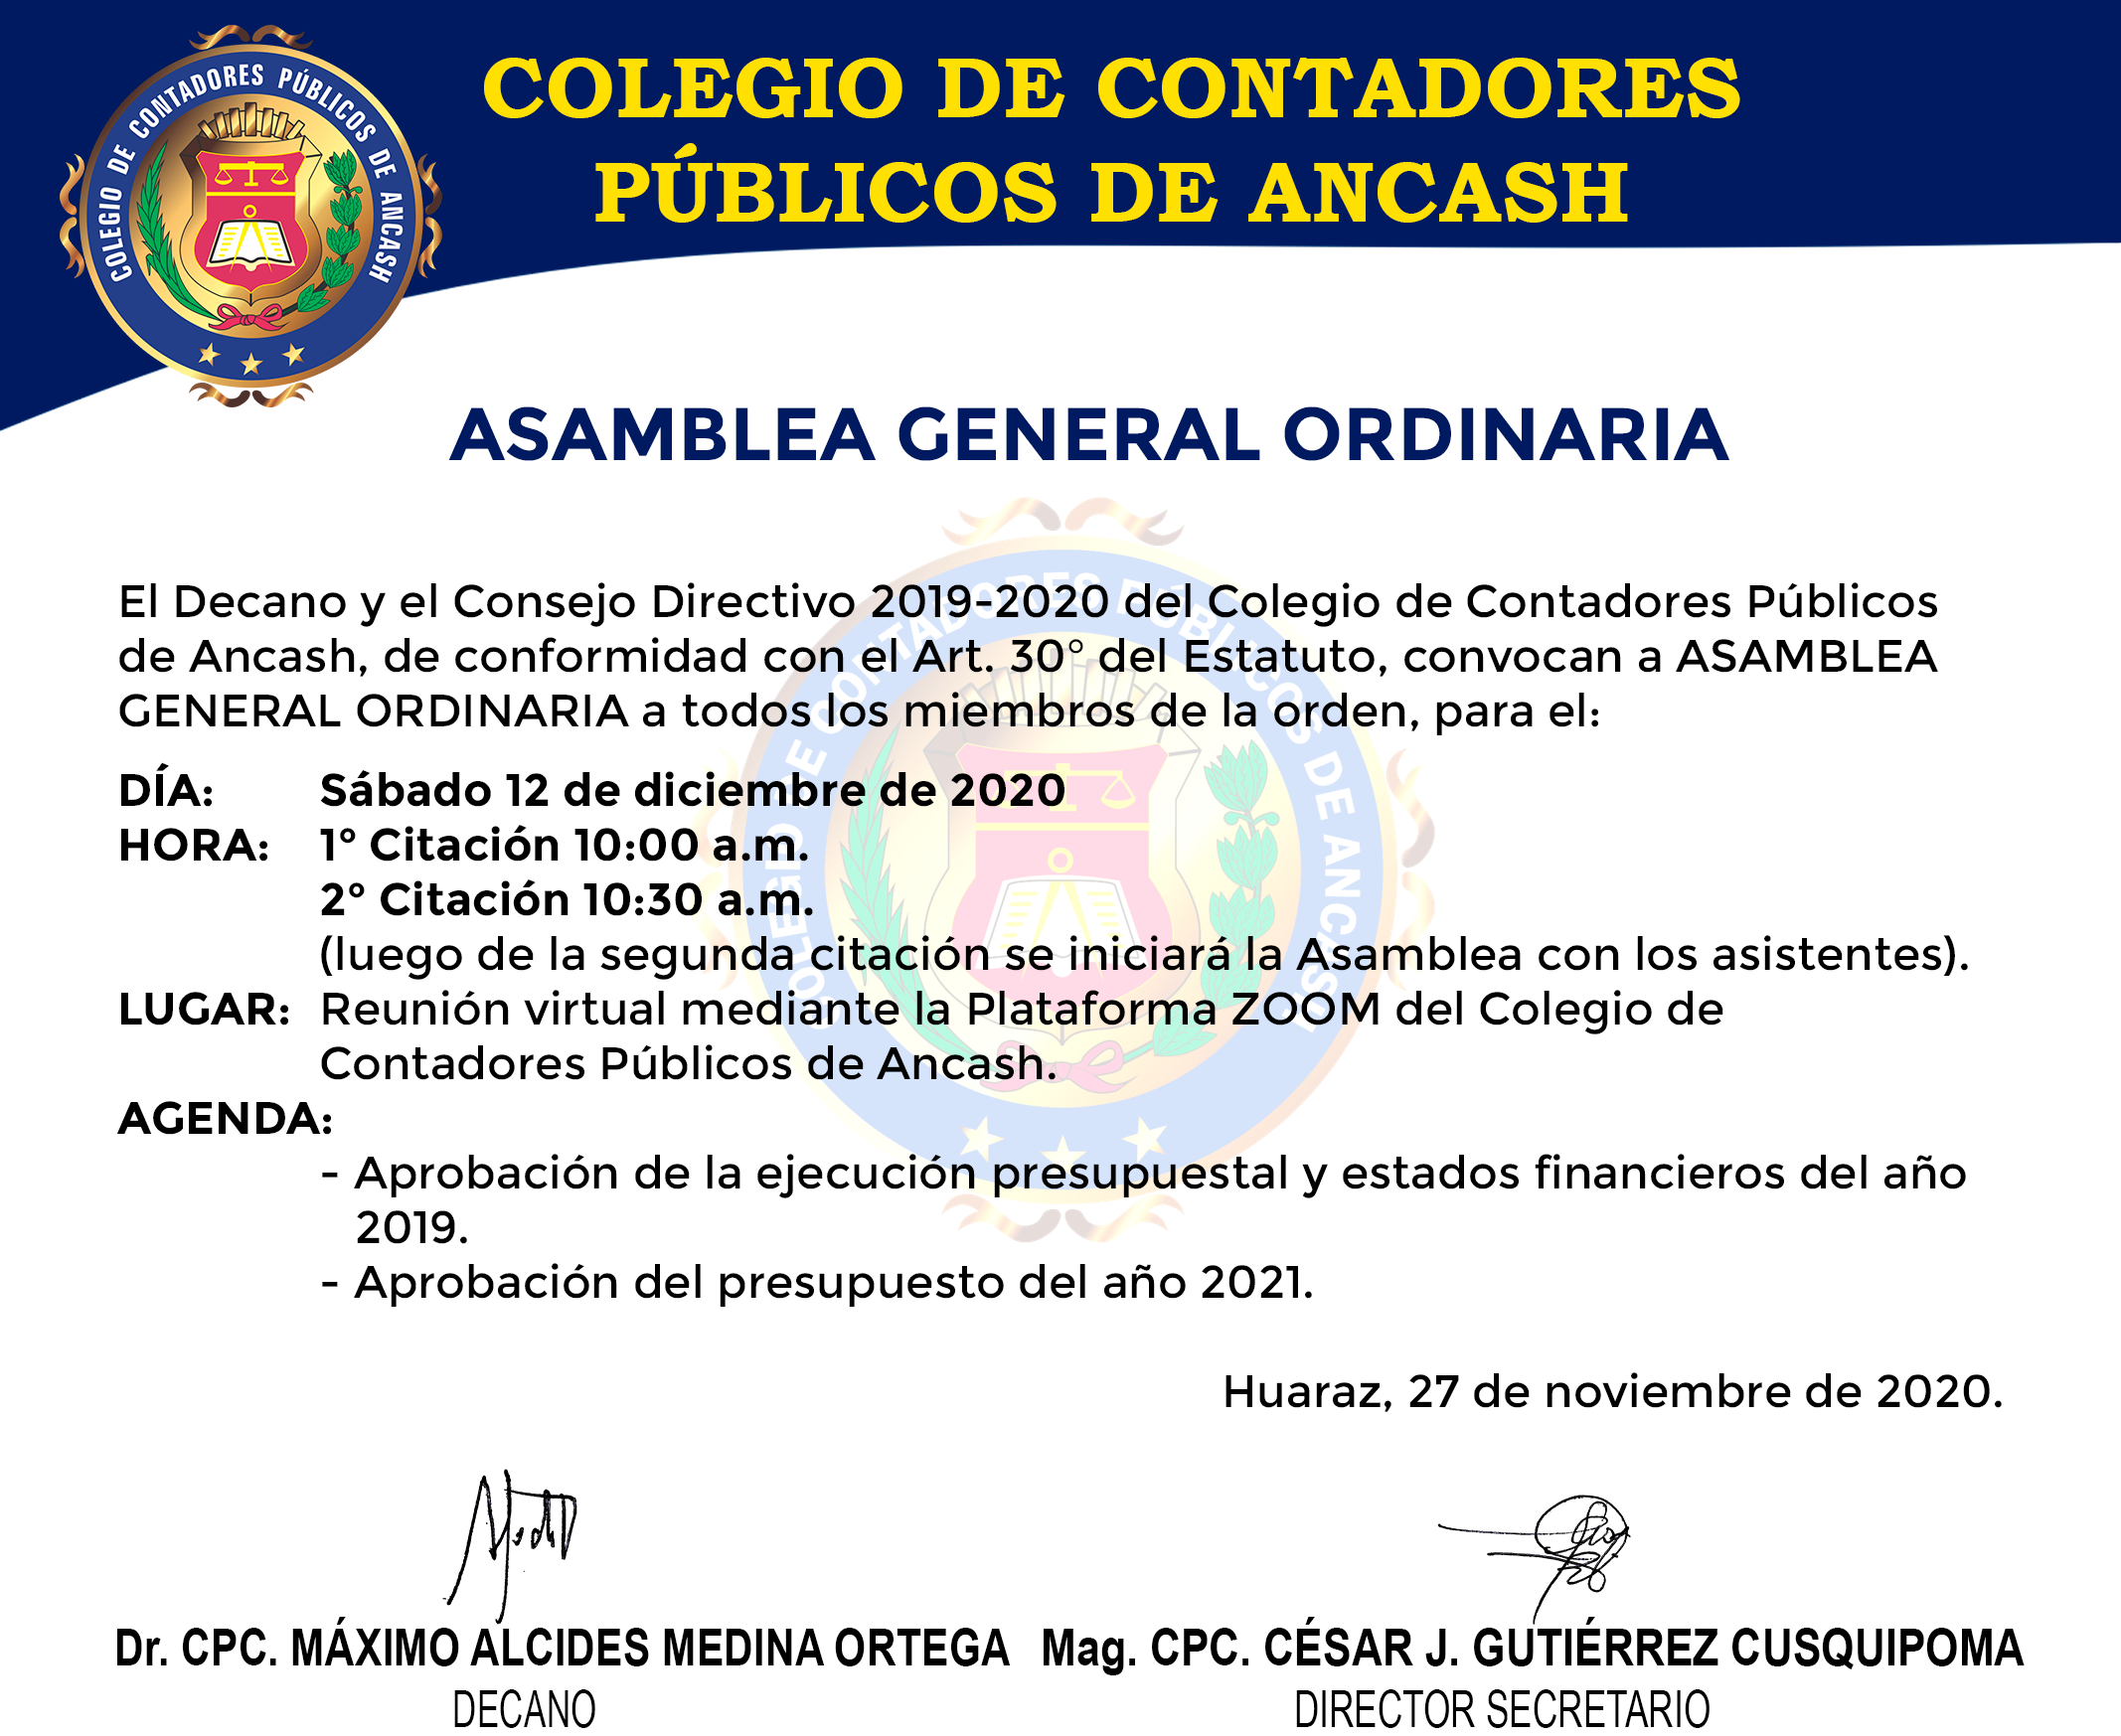 ASAMBLEA GENERAL ORDINARIA 12 DE DICIEMBRE DE 2020